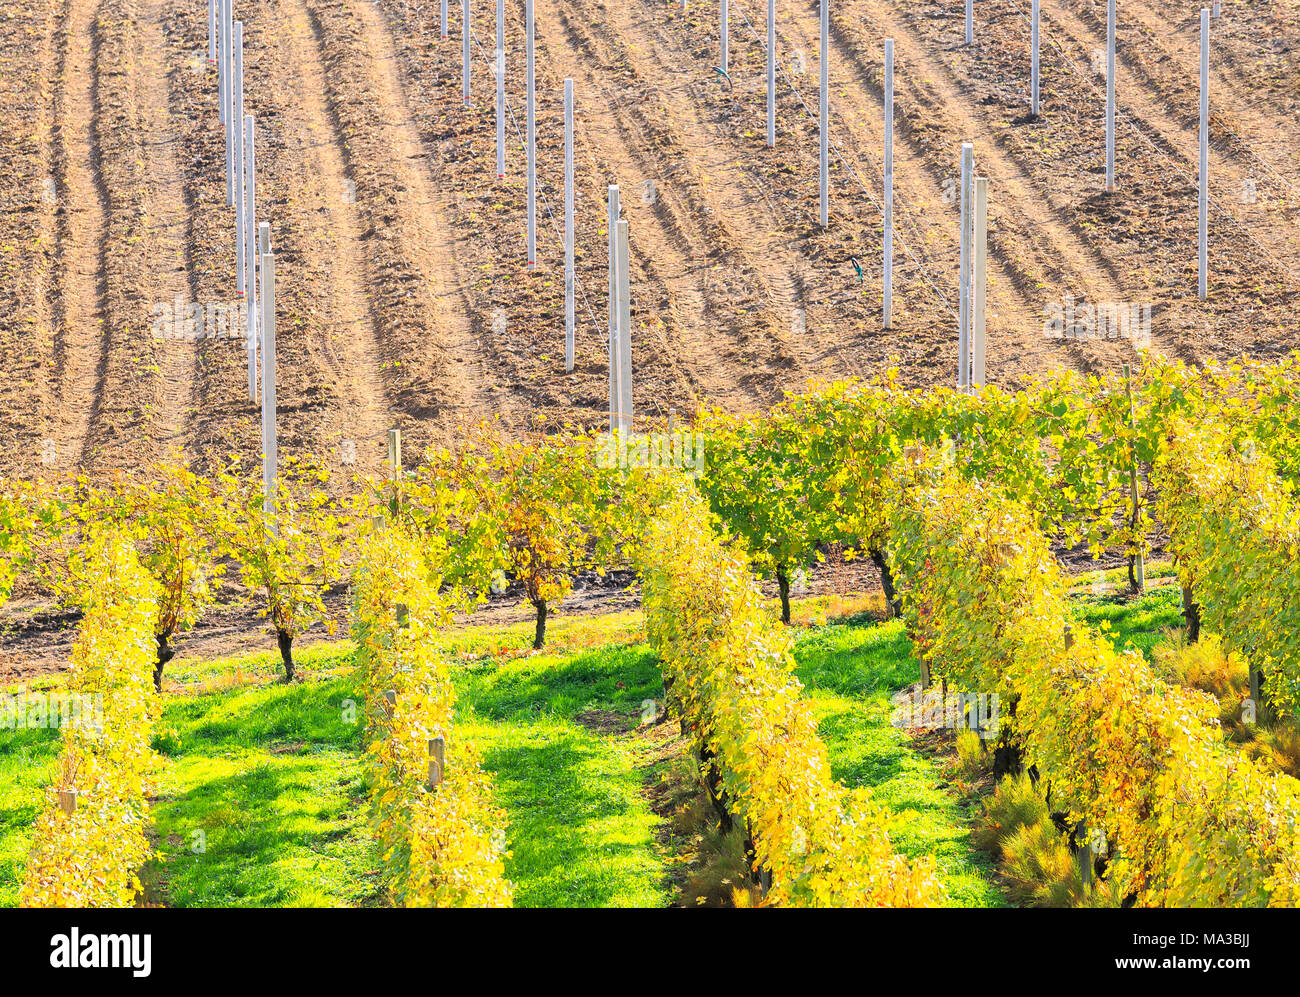 Weinberge und bewirtschaftete Felder von oben. Bianzone, Valtellina, Lombardei, Italien. Stockfoto